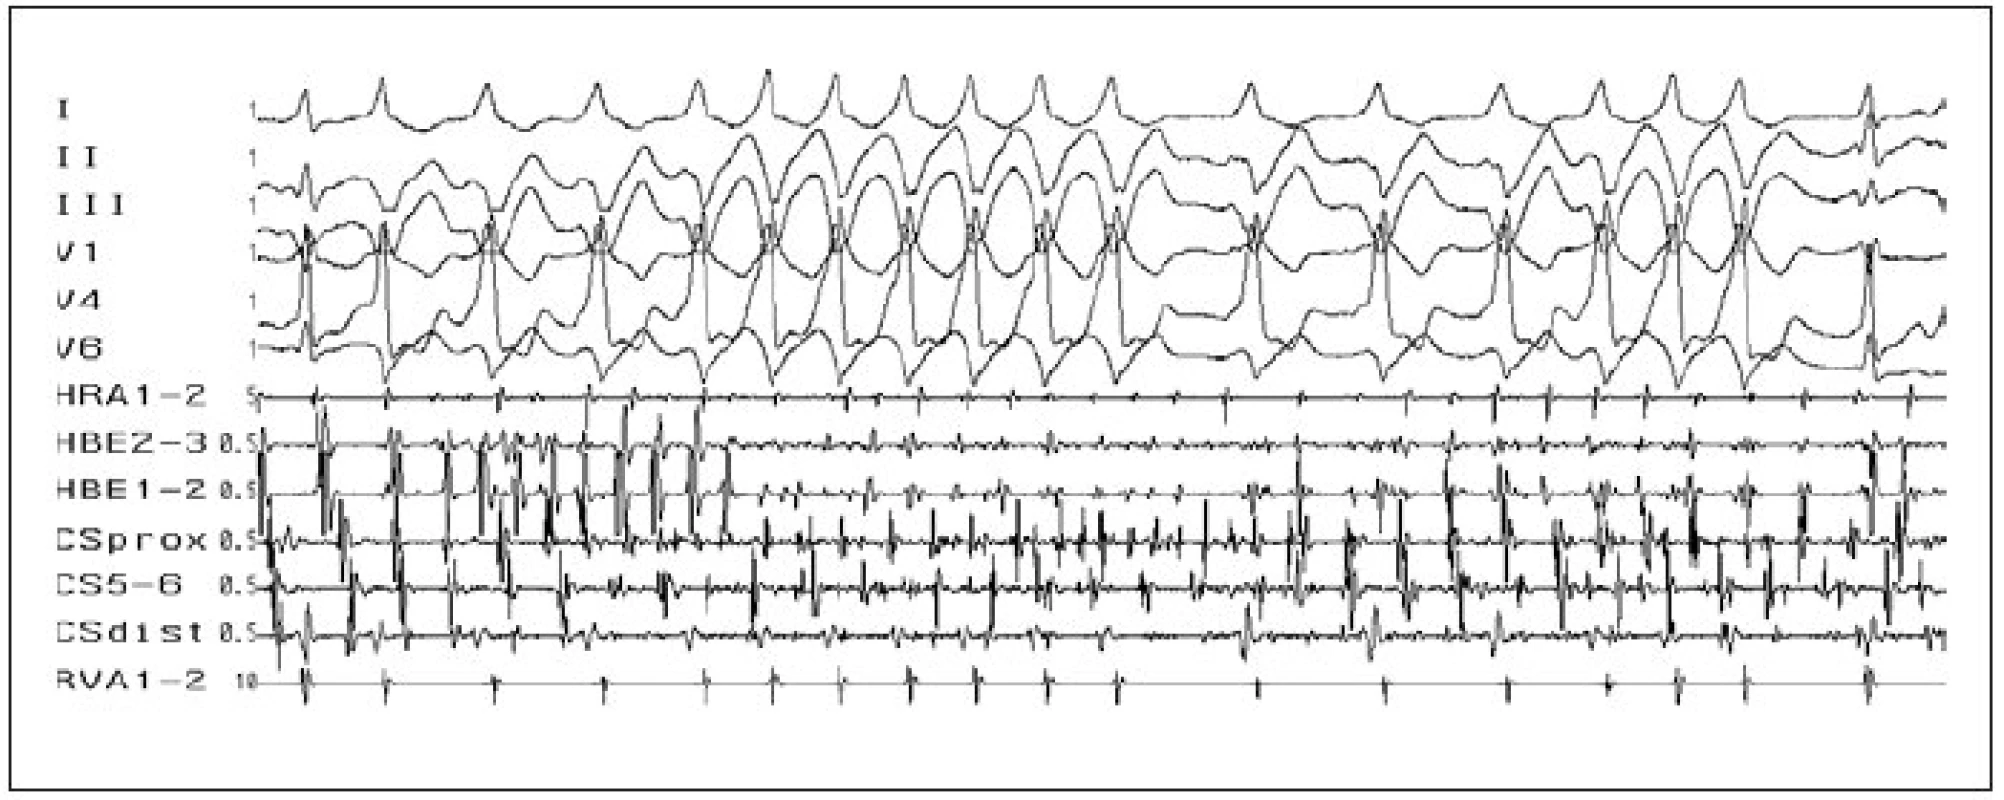 Fibrilace síní. Fibrilace síní (rychlé a nepravidelné, chaotické, síňové potenciály ve svodech HRA, HBE a CS), v povrchových svodech s různě vyjádřeným stupněm preexcitace (různě široké QRS-komplexy) u pacienta s akcesorní spojkou v posteroseptální oblasti (negativní delta-vlna ve svodech II, III).